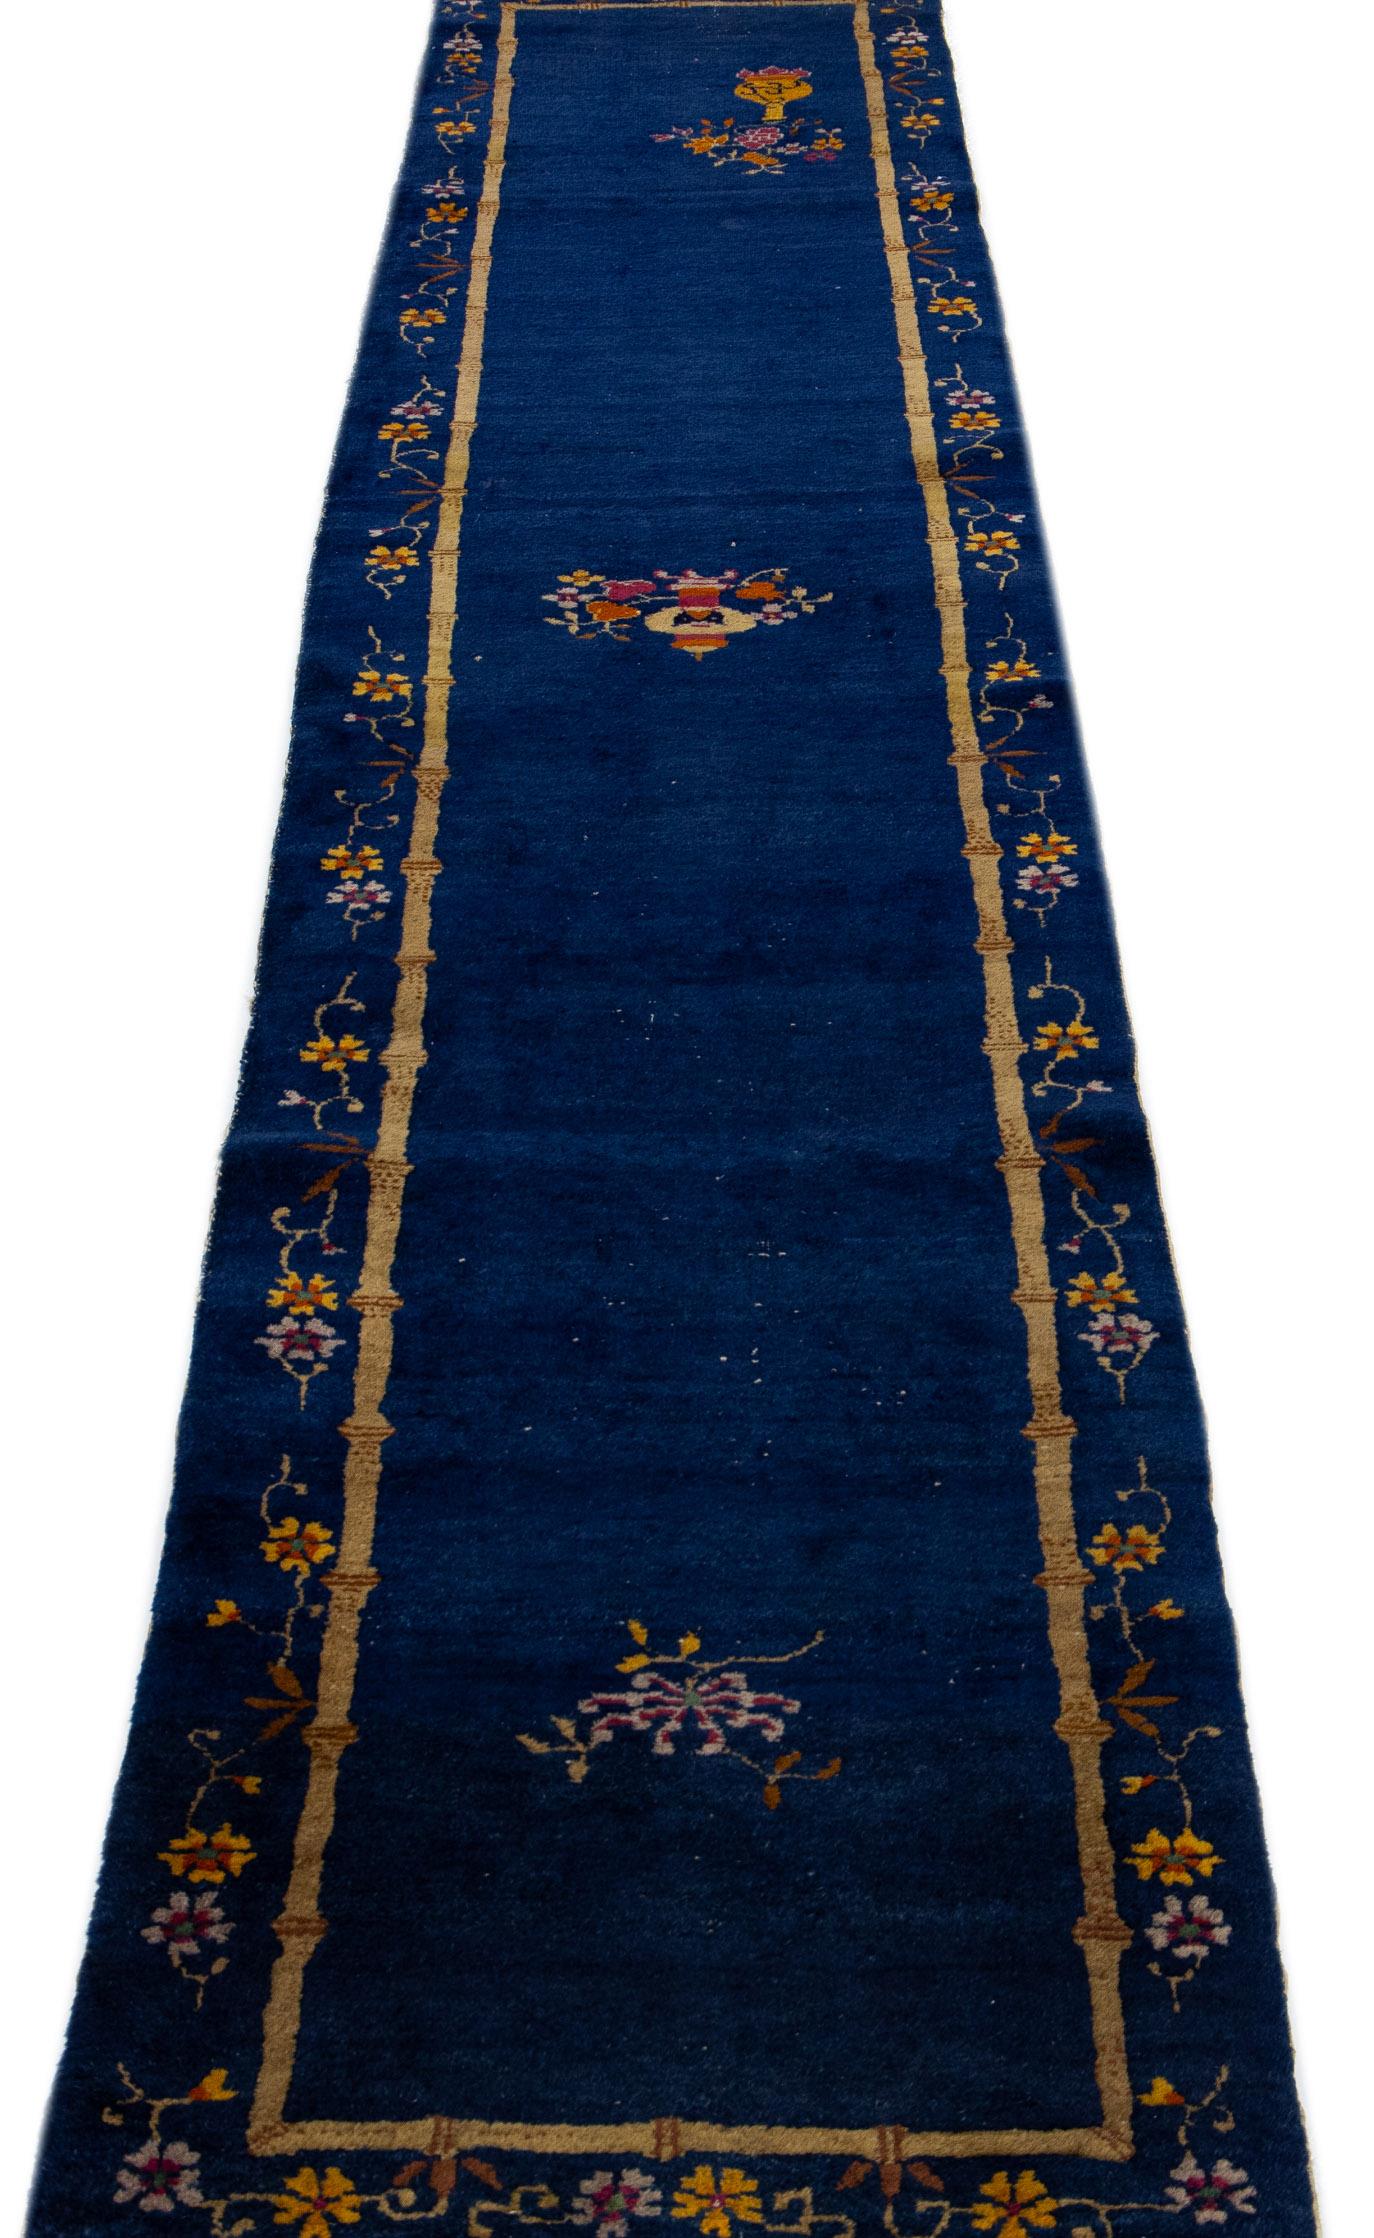 Magnifique chemin de table en laine nouée à la main, de style chinois pékinois, avec un champ bleu marine. Ce tapis chinois présente des accents multicolores dans un magnifique motif floral chinois. 

Ce tapis mesure : 2'5